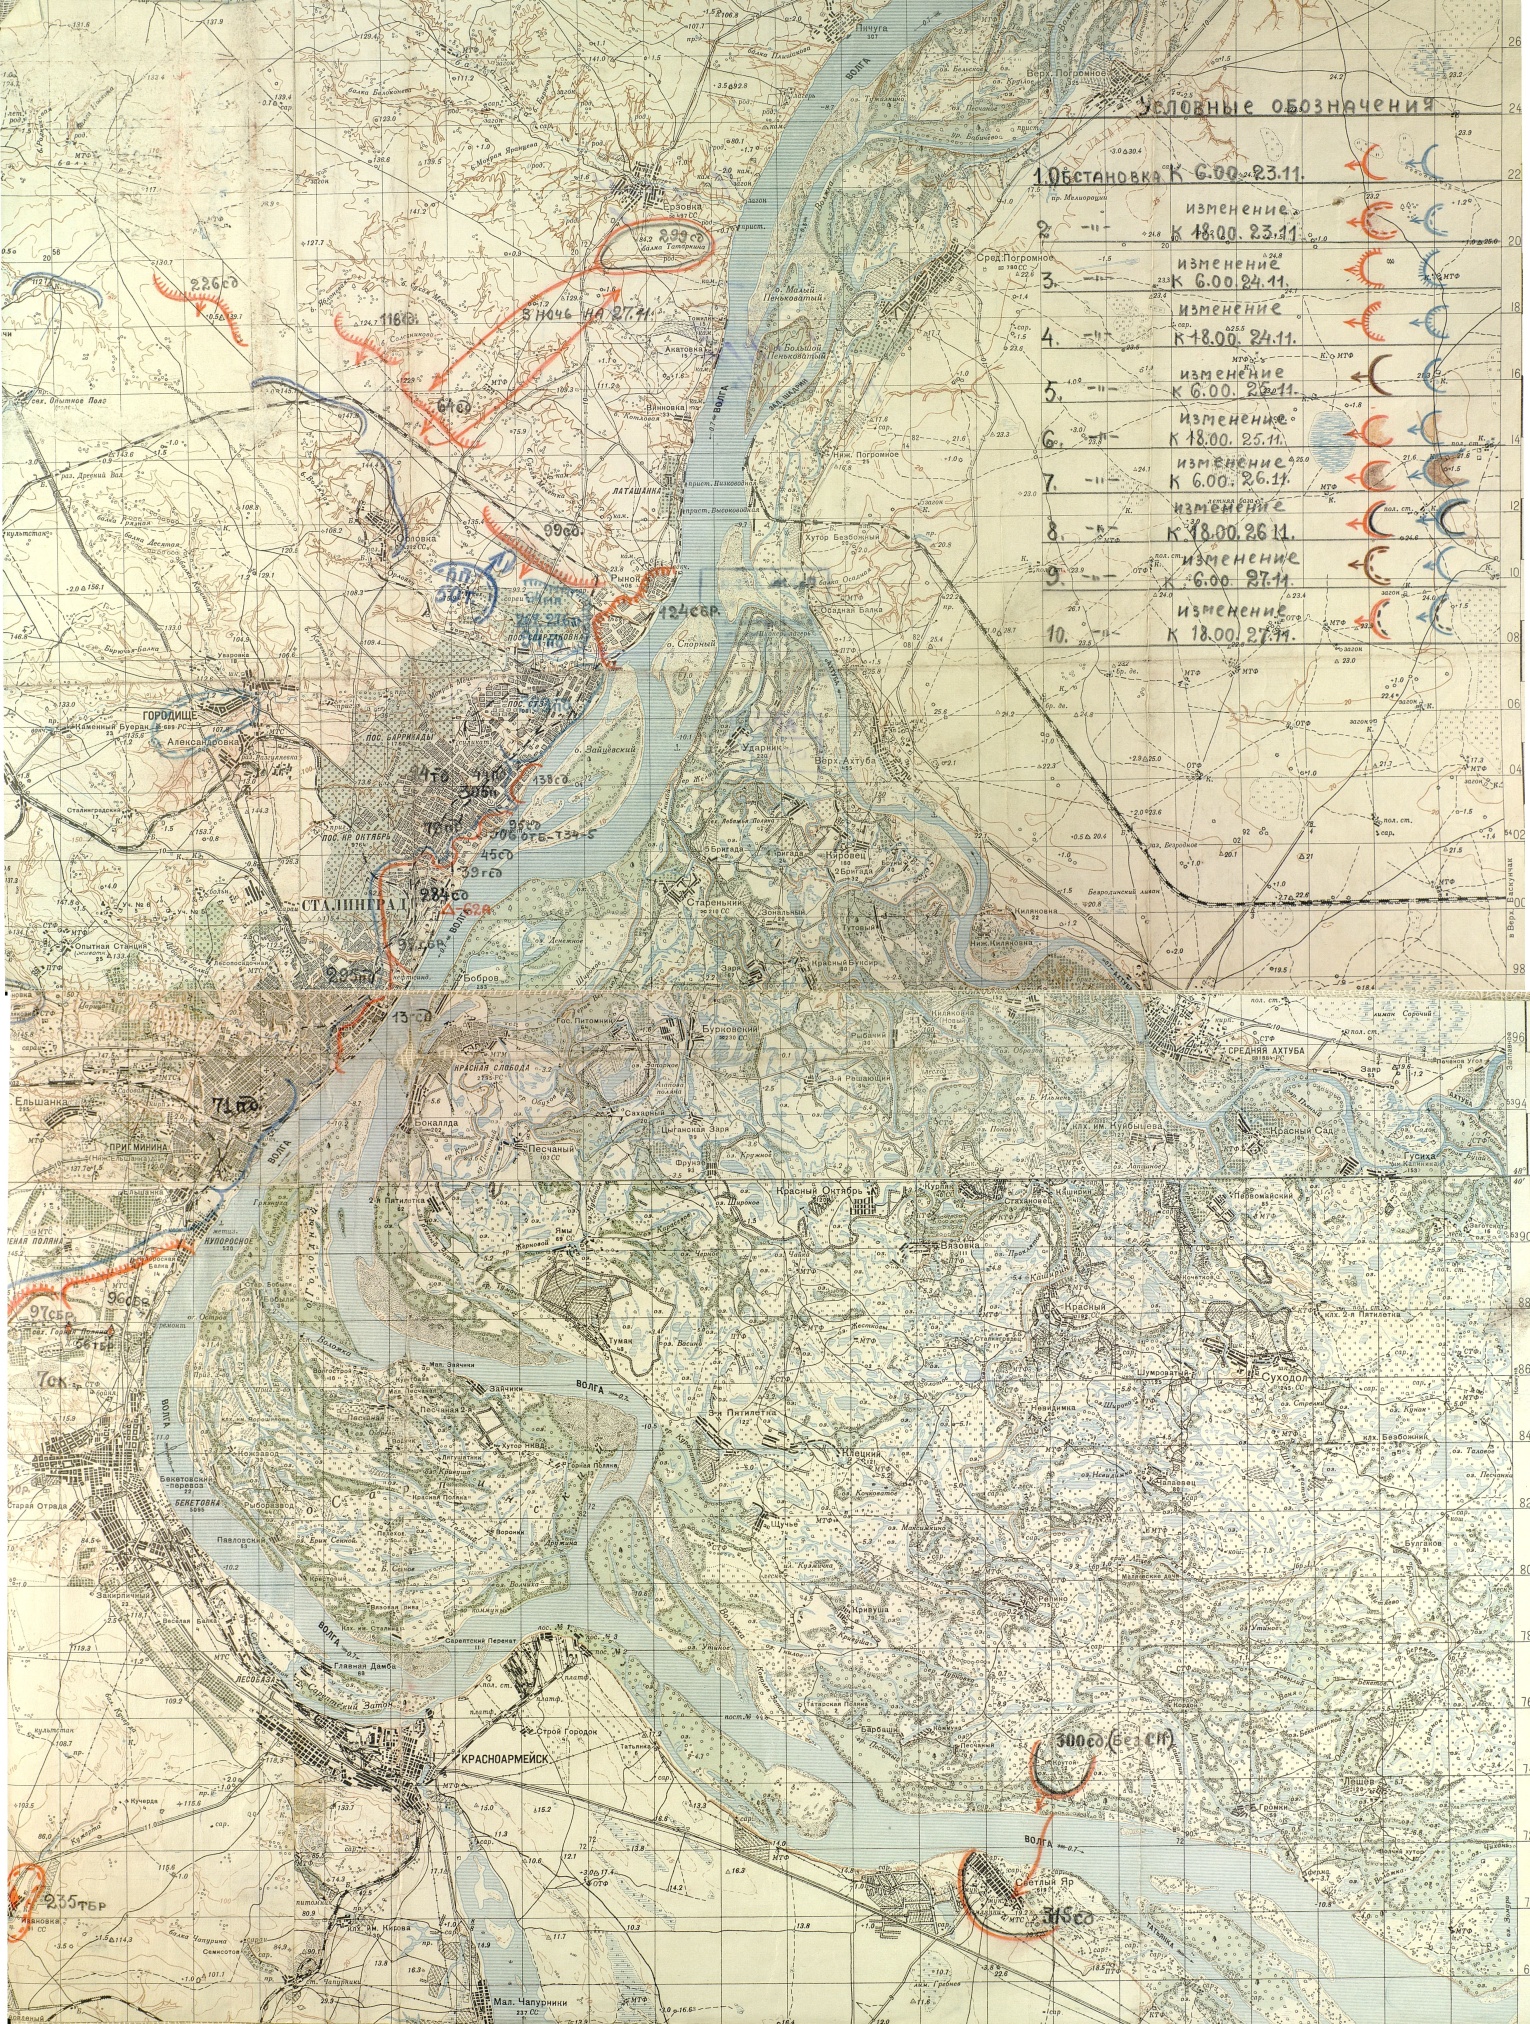 Оперативная карта положения войск Красной Армии и вермахта. 23 ноября 1942 года. ЦАМО.